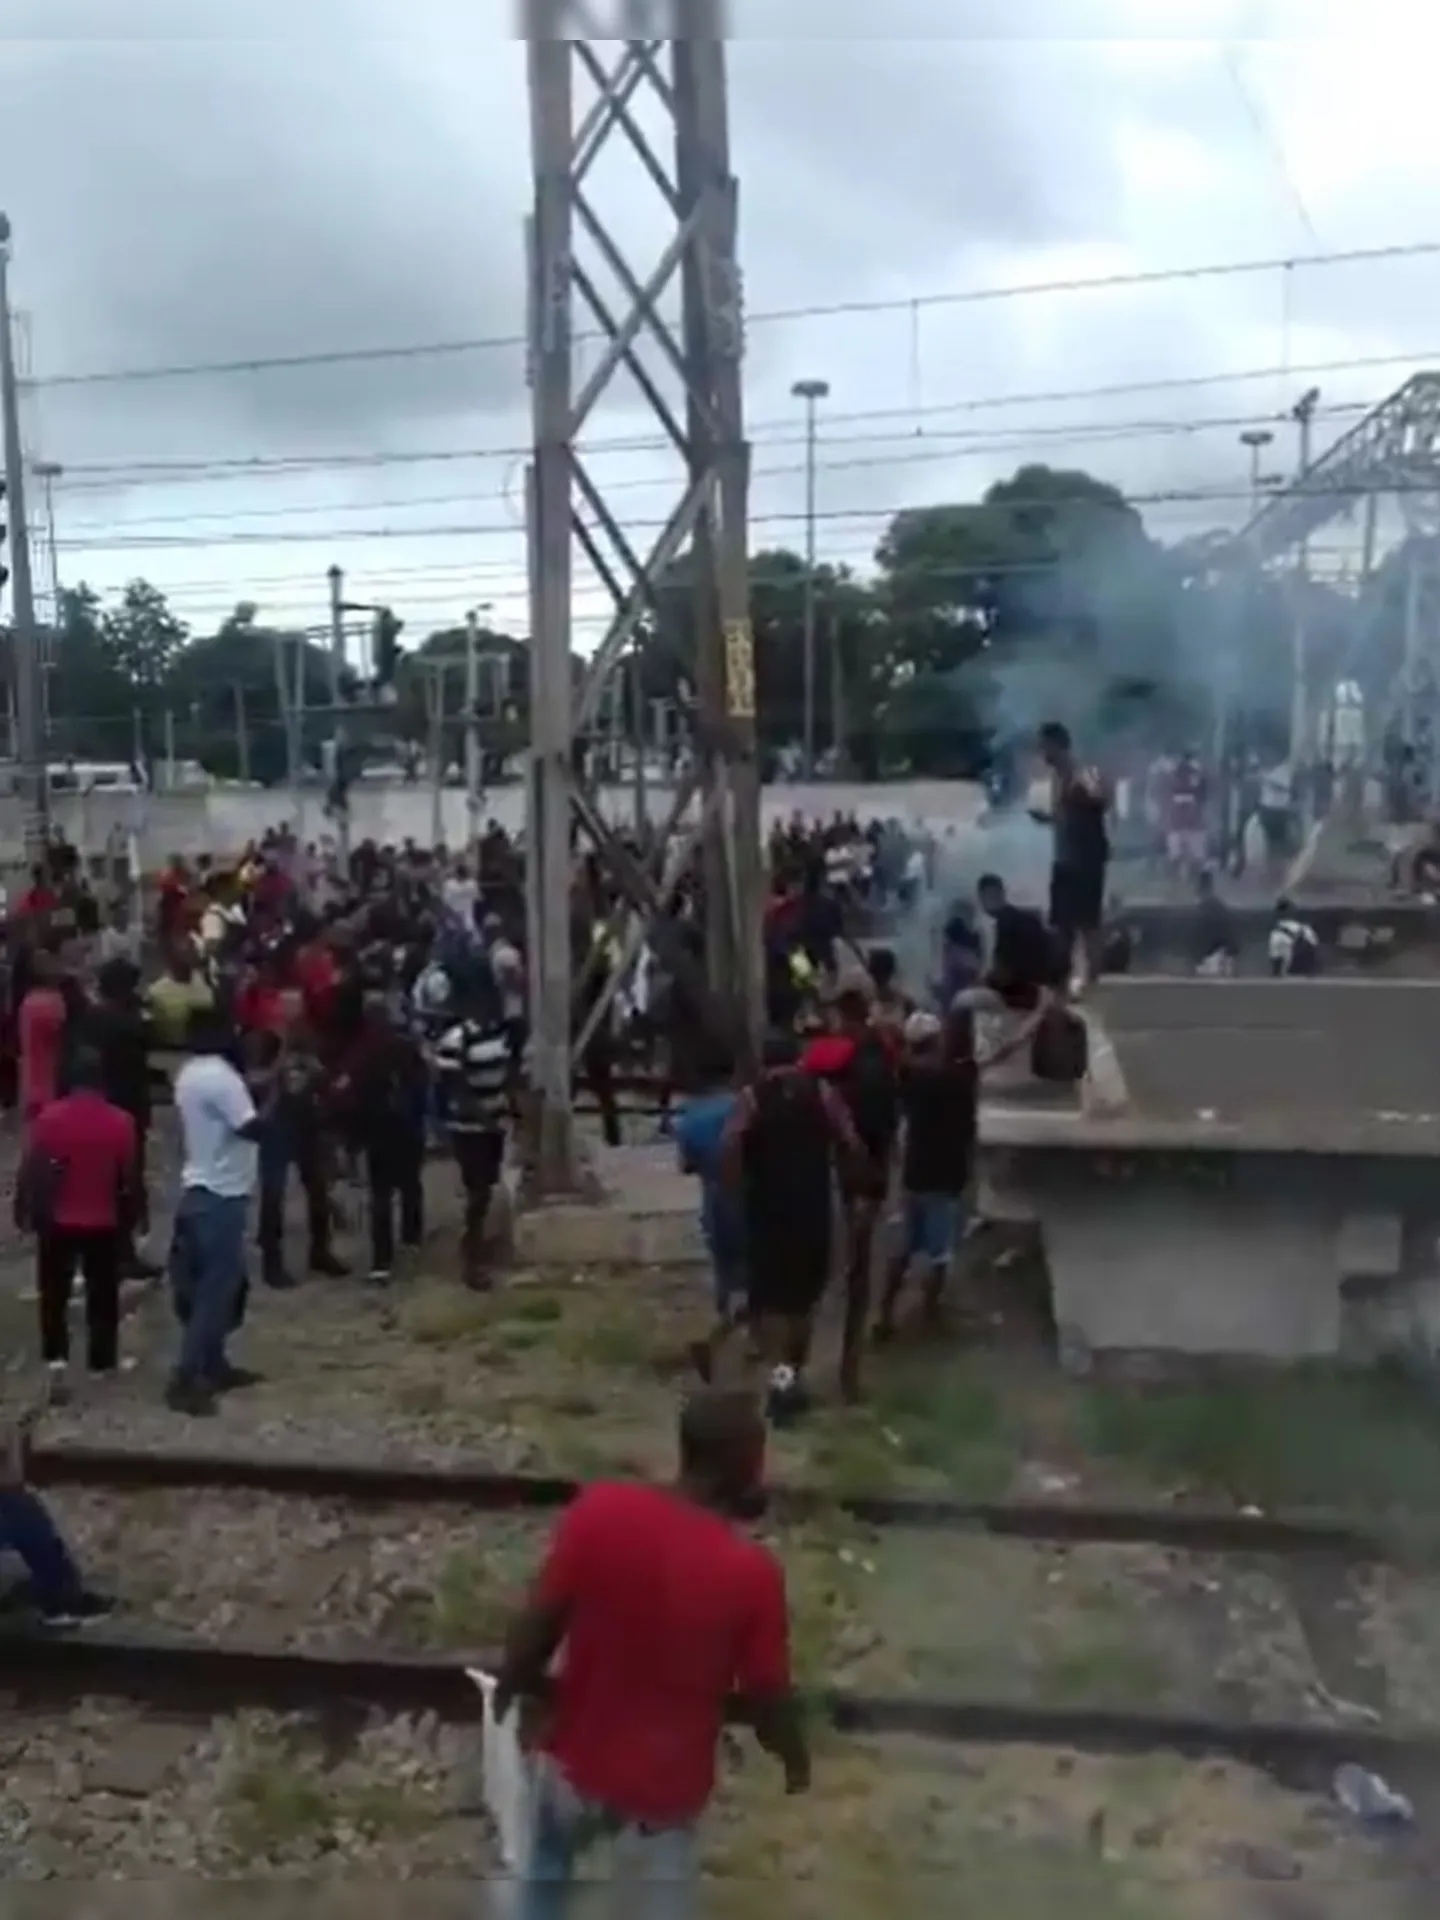 Segundo relatos nas redes sociais, um dos trens que seguia na direção da Central do Brasil teria apresentado problemas técnicos.